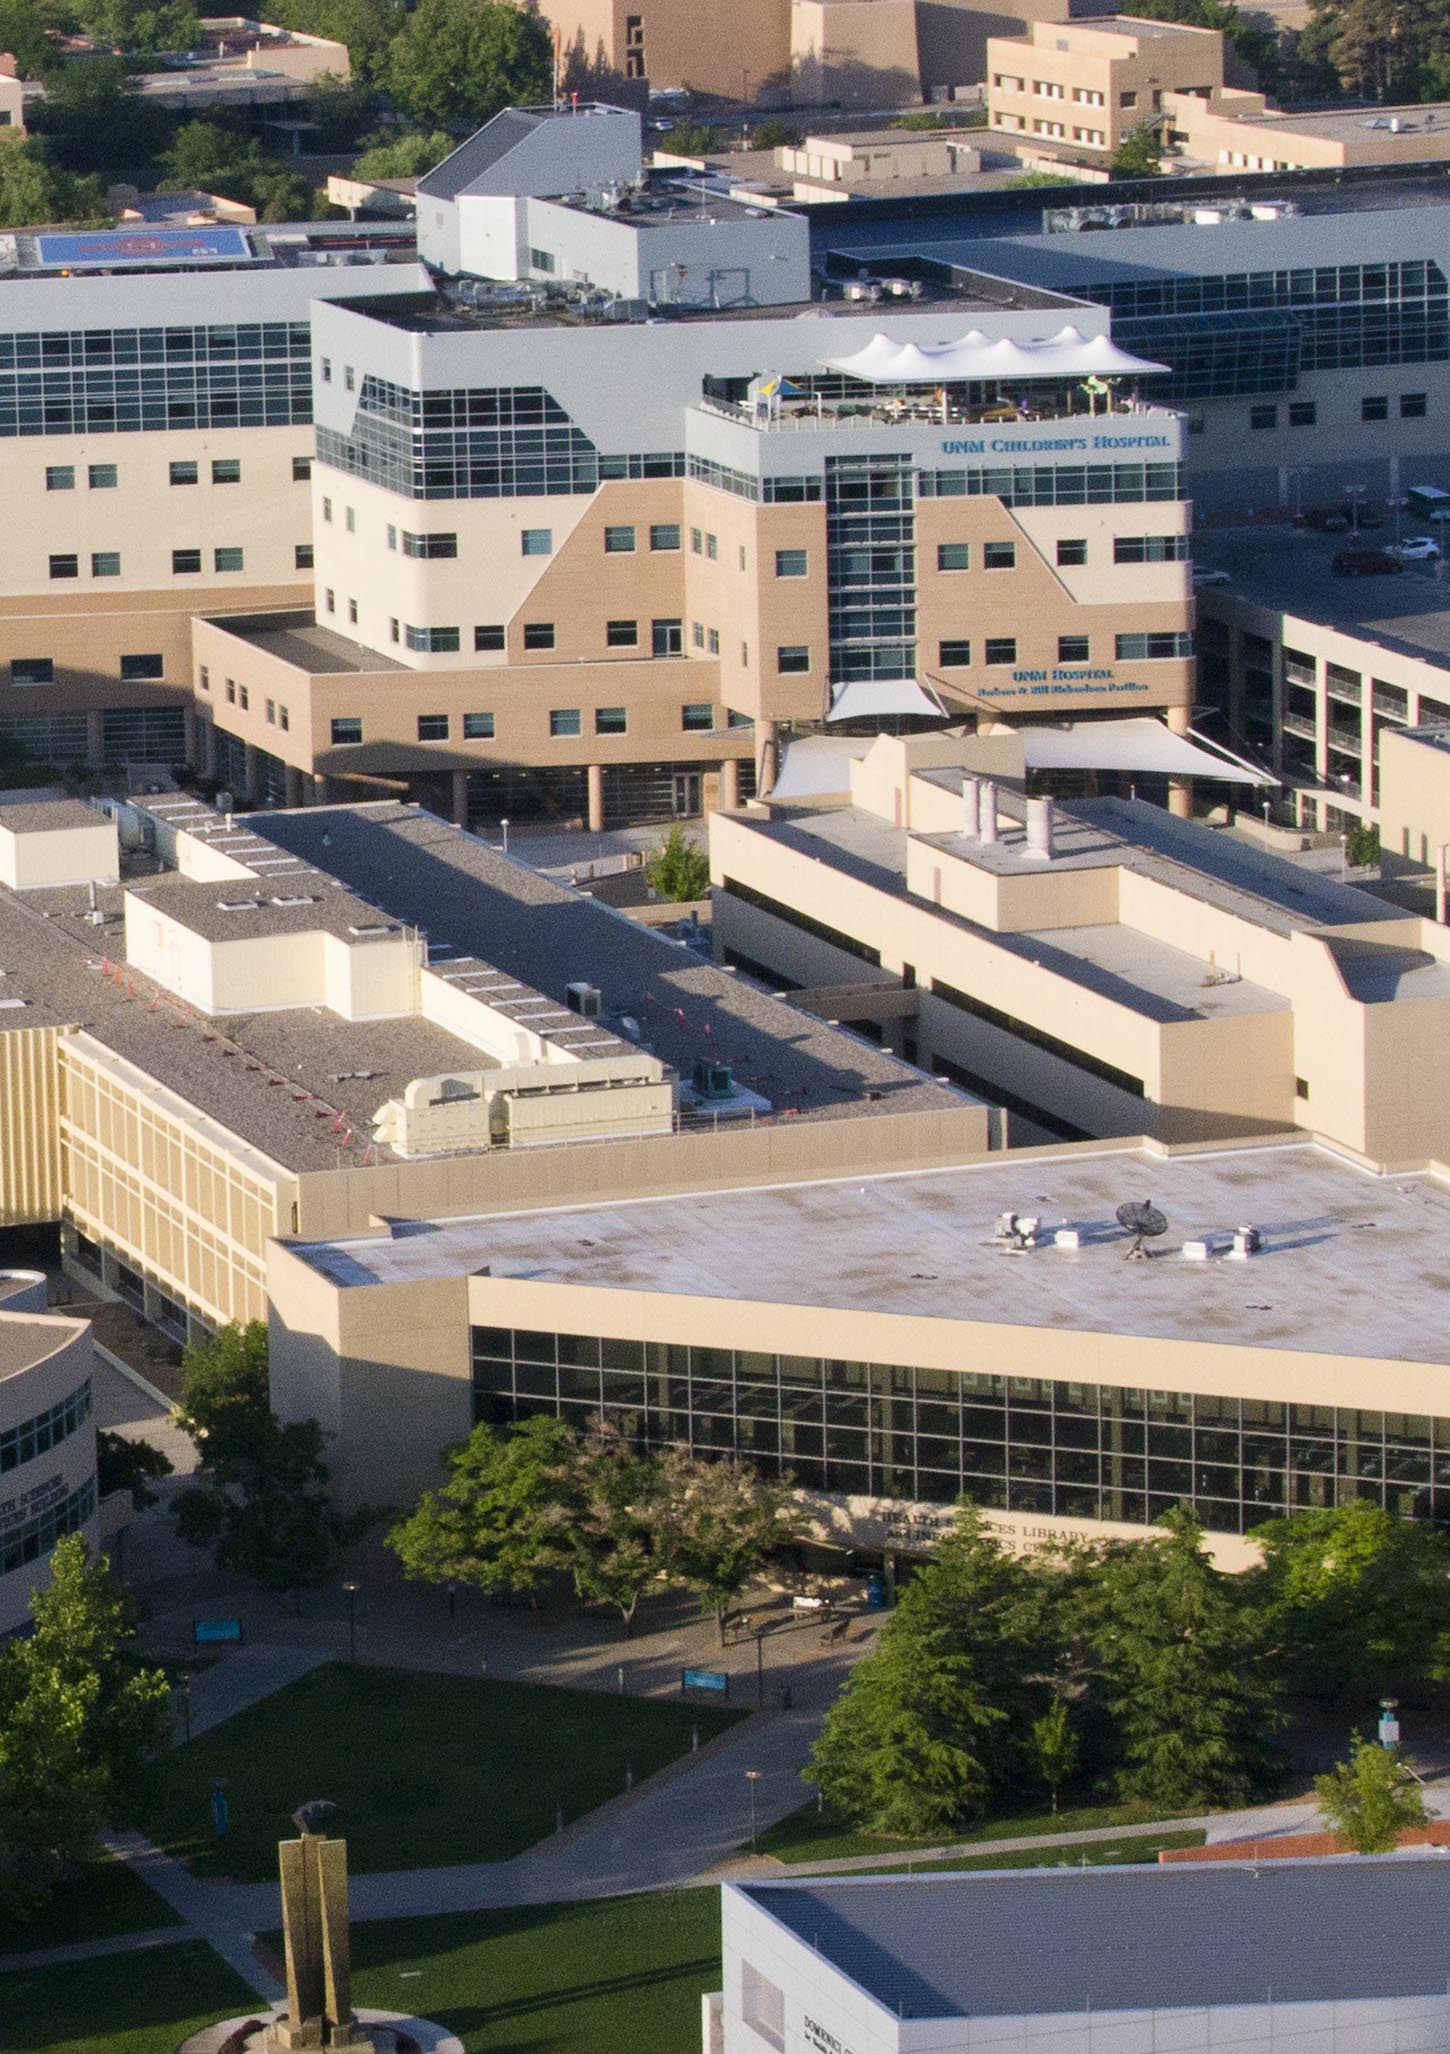 Vista aérea do Hospital da UNM e do campus da UNM HSC